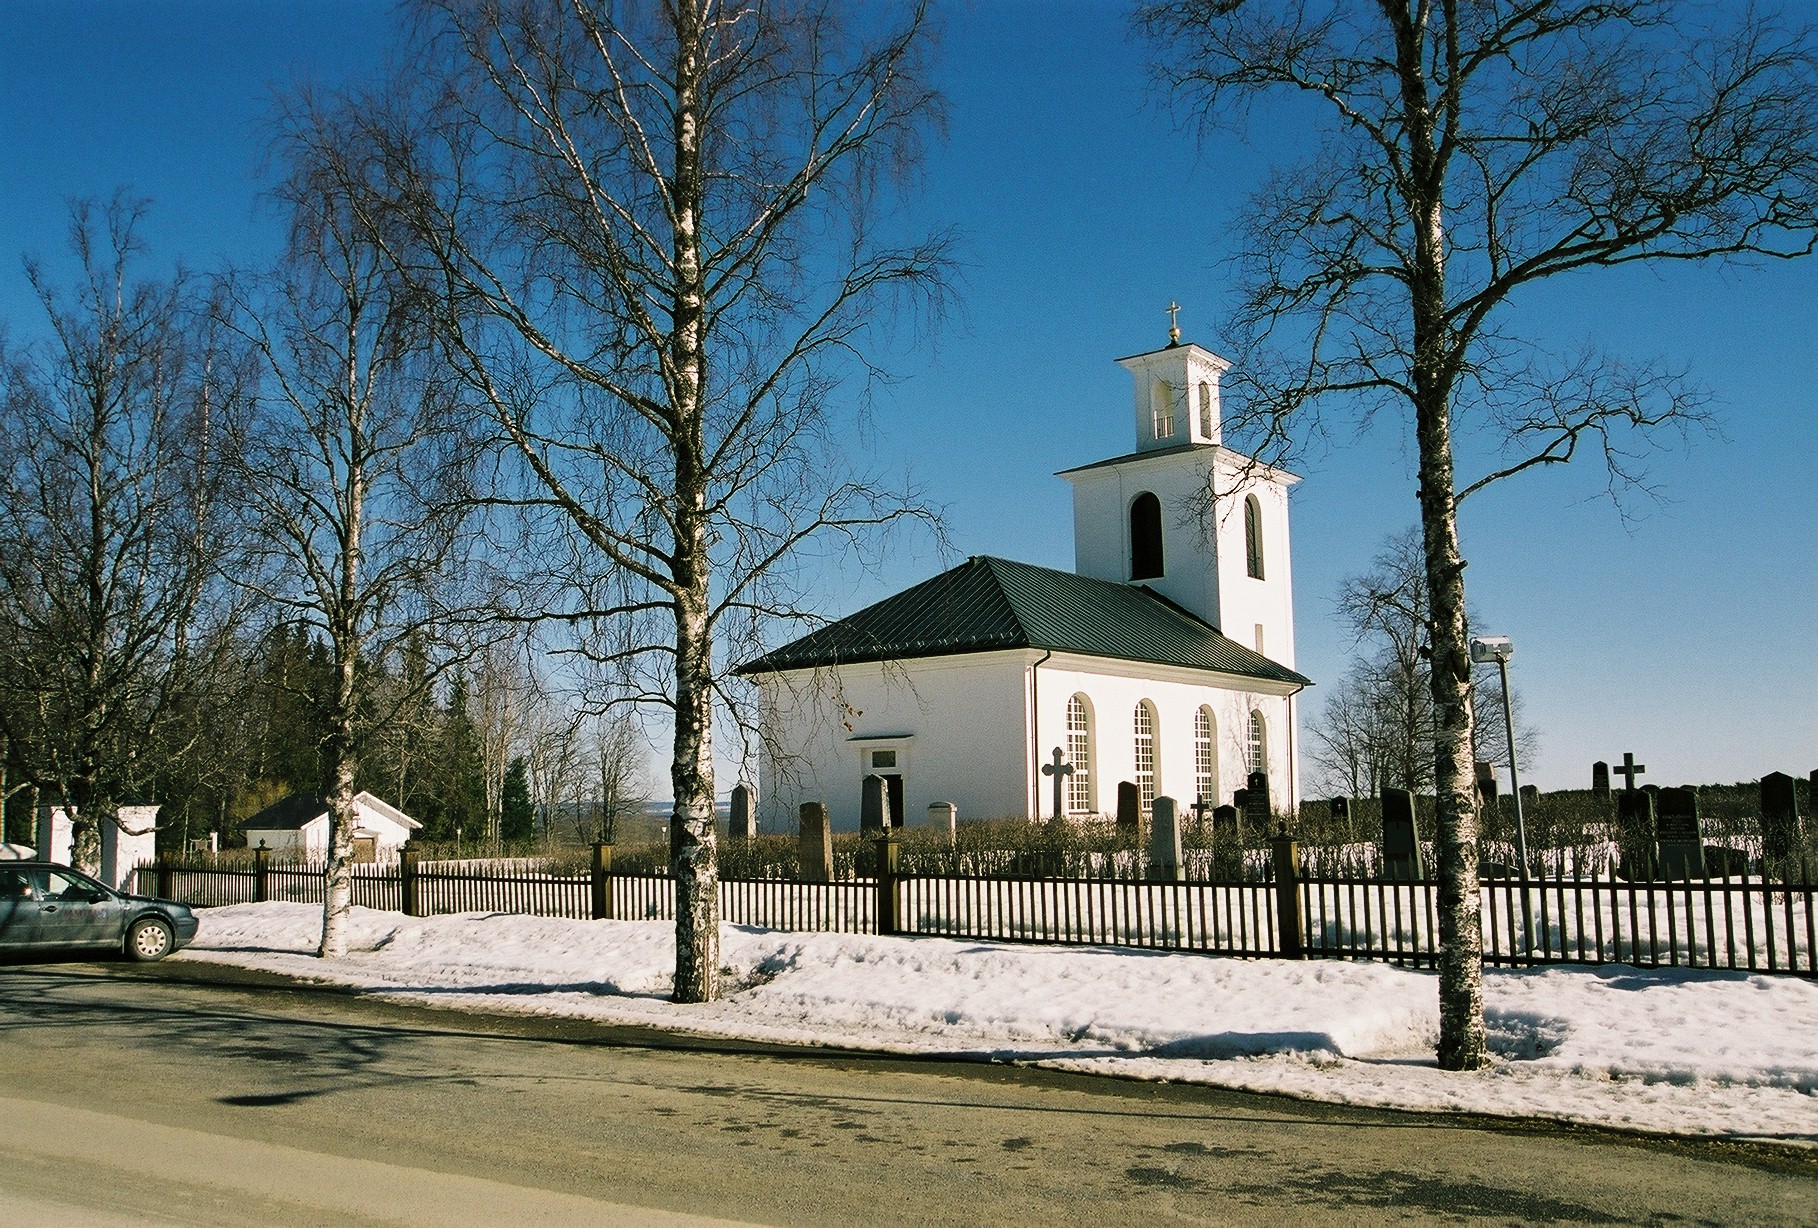 Kyrkås kyrka med omgivande kyrkogård. Vy från sydväst. 

Bilderna är tagna av Martin Lagergren & Emelie Petersson, bebyggelseantikvarier vid Jämtlands läns museum, i samband med inventeringen, 2004-2005.